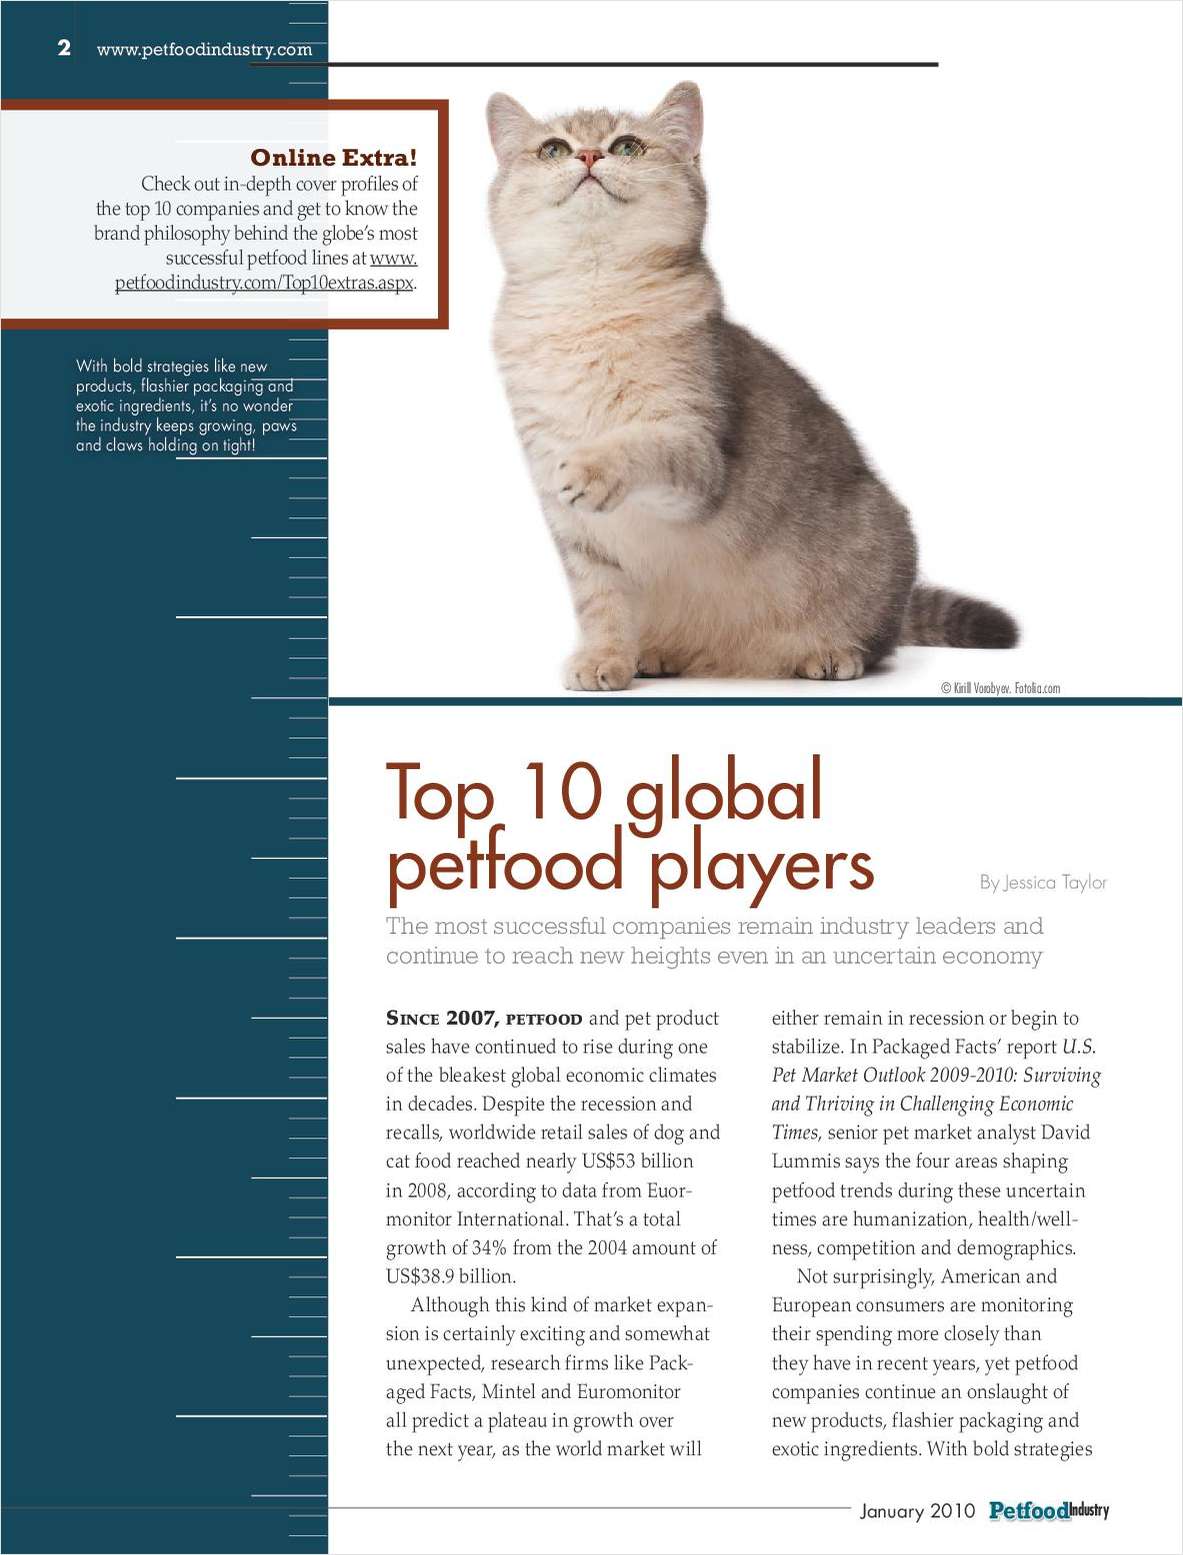 Top 10 Global Petfood Players – Executive Brief